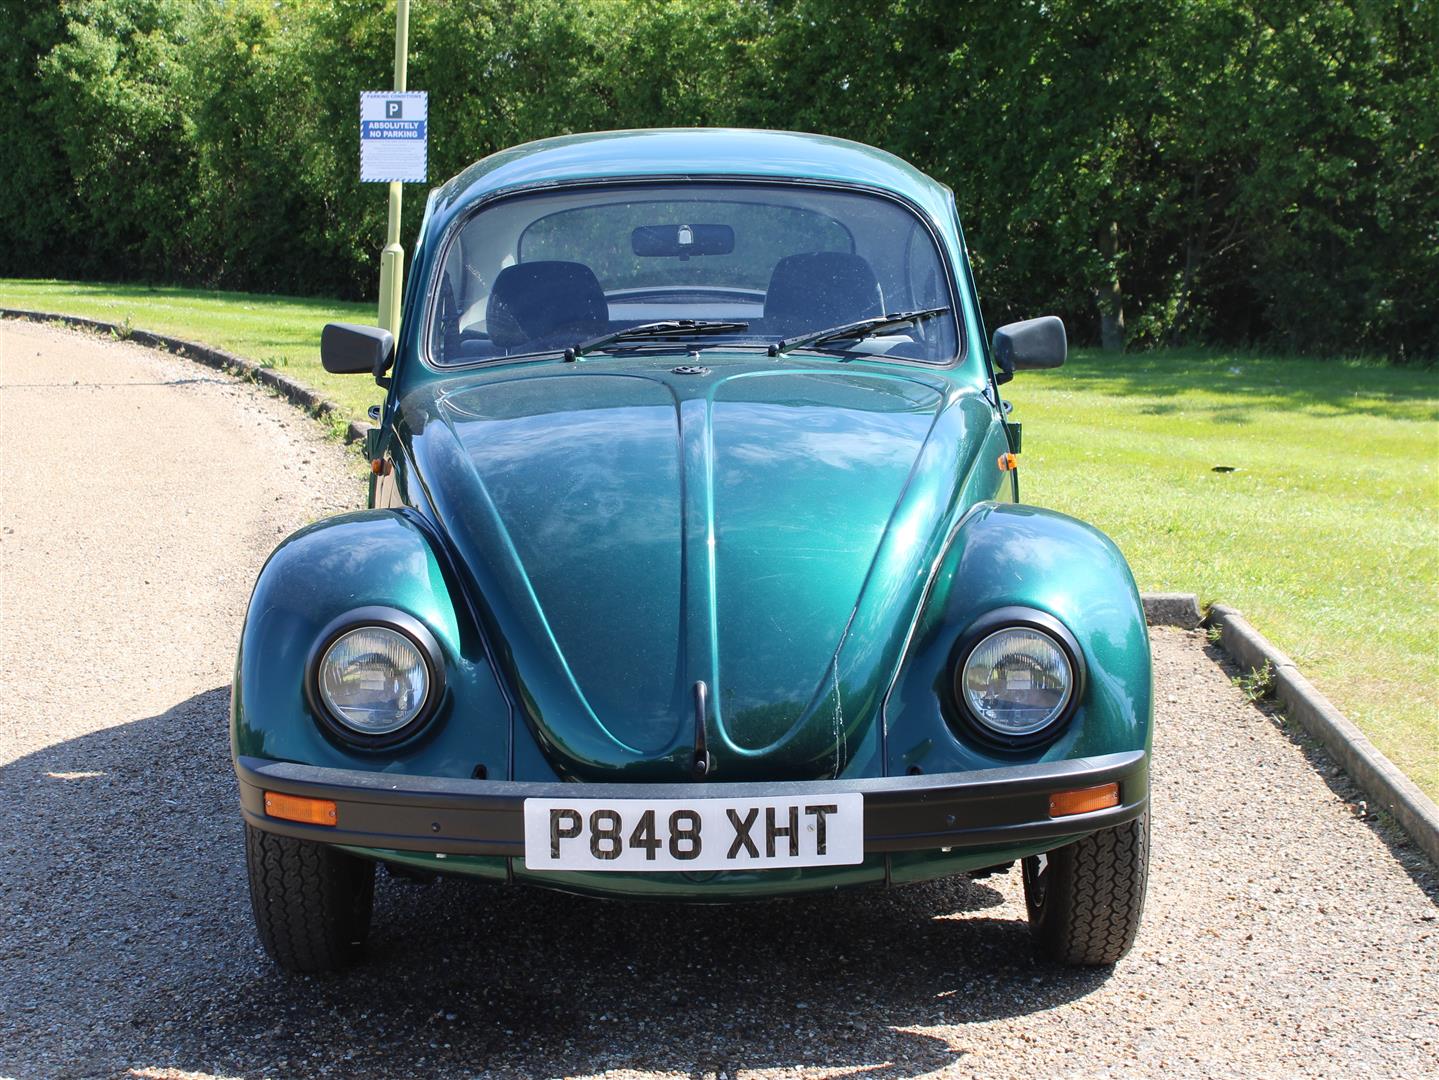 1997 VW Beetle 1600 - Image 2 of 18